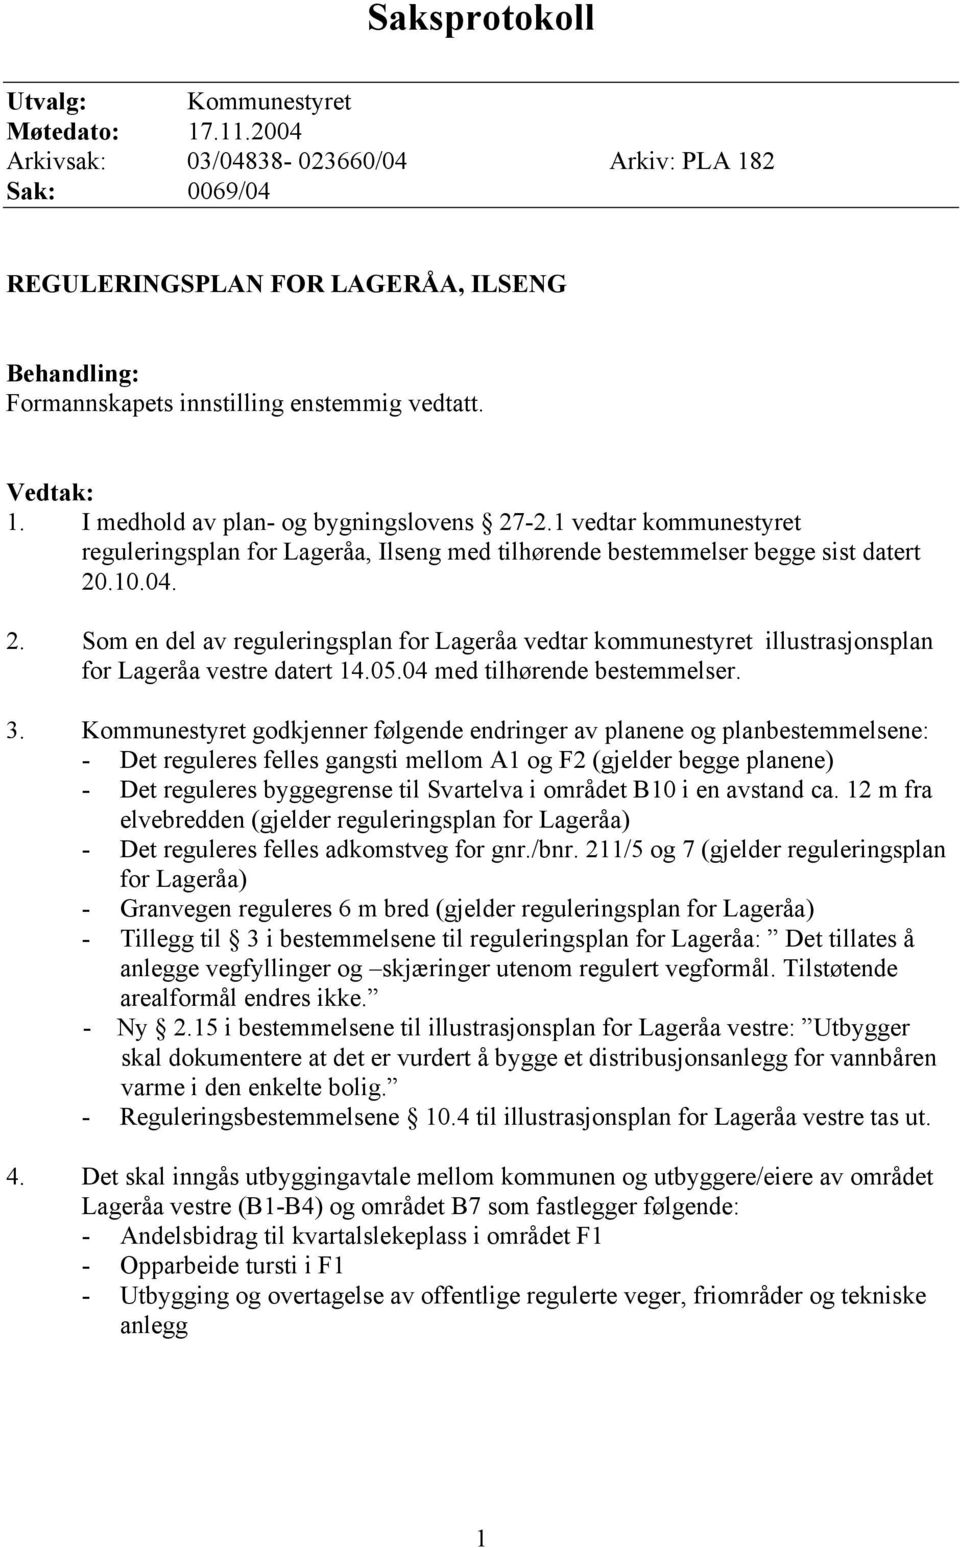 I medhold av plan- og bygningslovens 27-2.1 vedtar kommunestyret reguleringsplan for Lageråa, Ilseng med tilhørende bestemmelser begge sist datert 20.10.04. 2. Som en del av reguleringsplan for Lageråa vedtar kommunestyret illustrasjonsplan for Lageråa vestre datert 14.